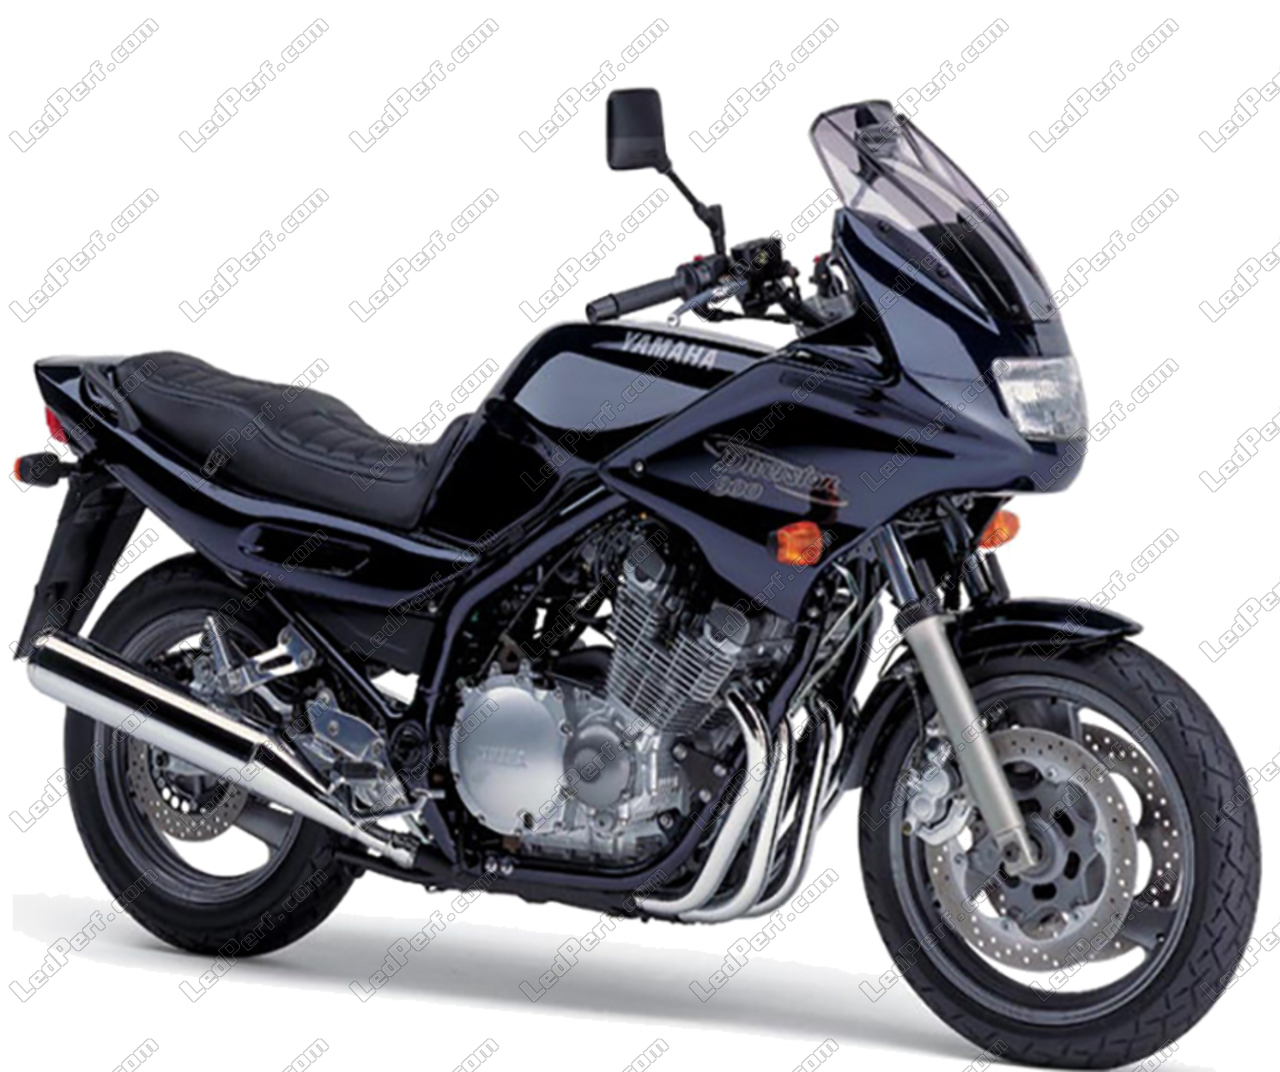 YAMAHA XJ 600 DIVERSION 1994 600 cm3 | moto routière | 41 